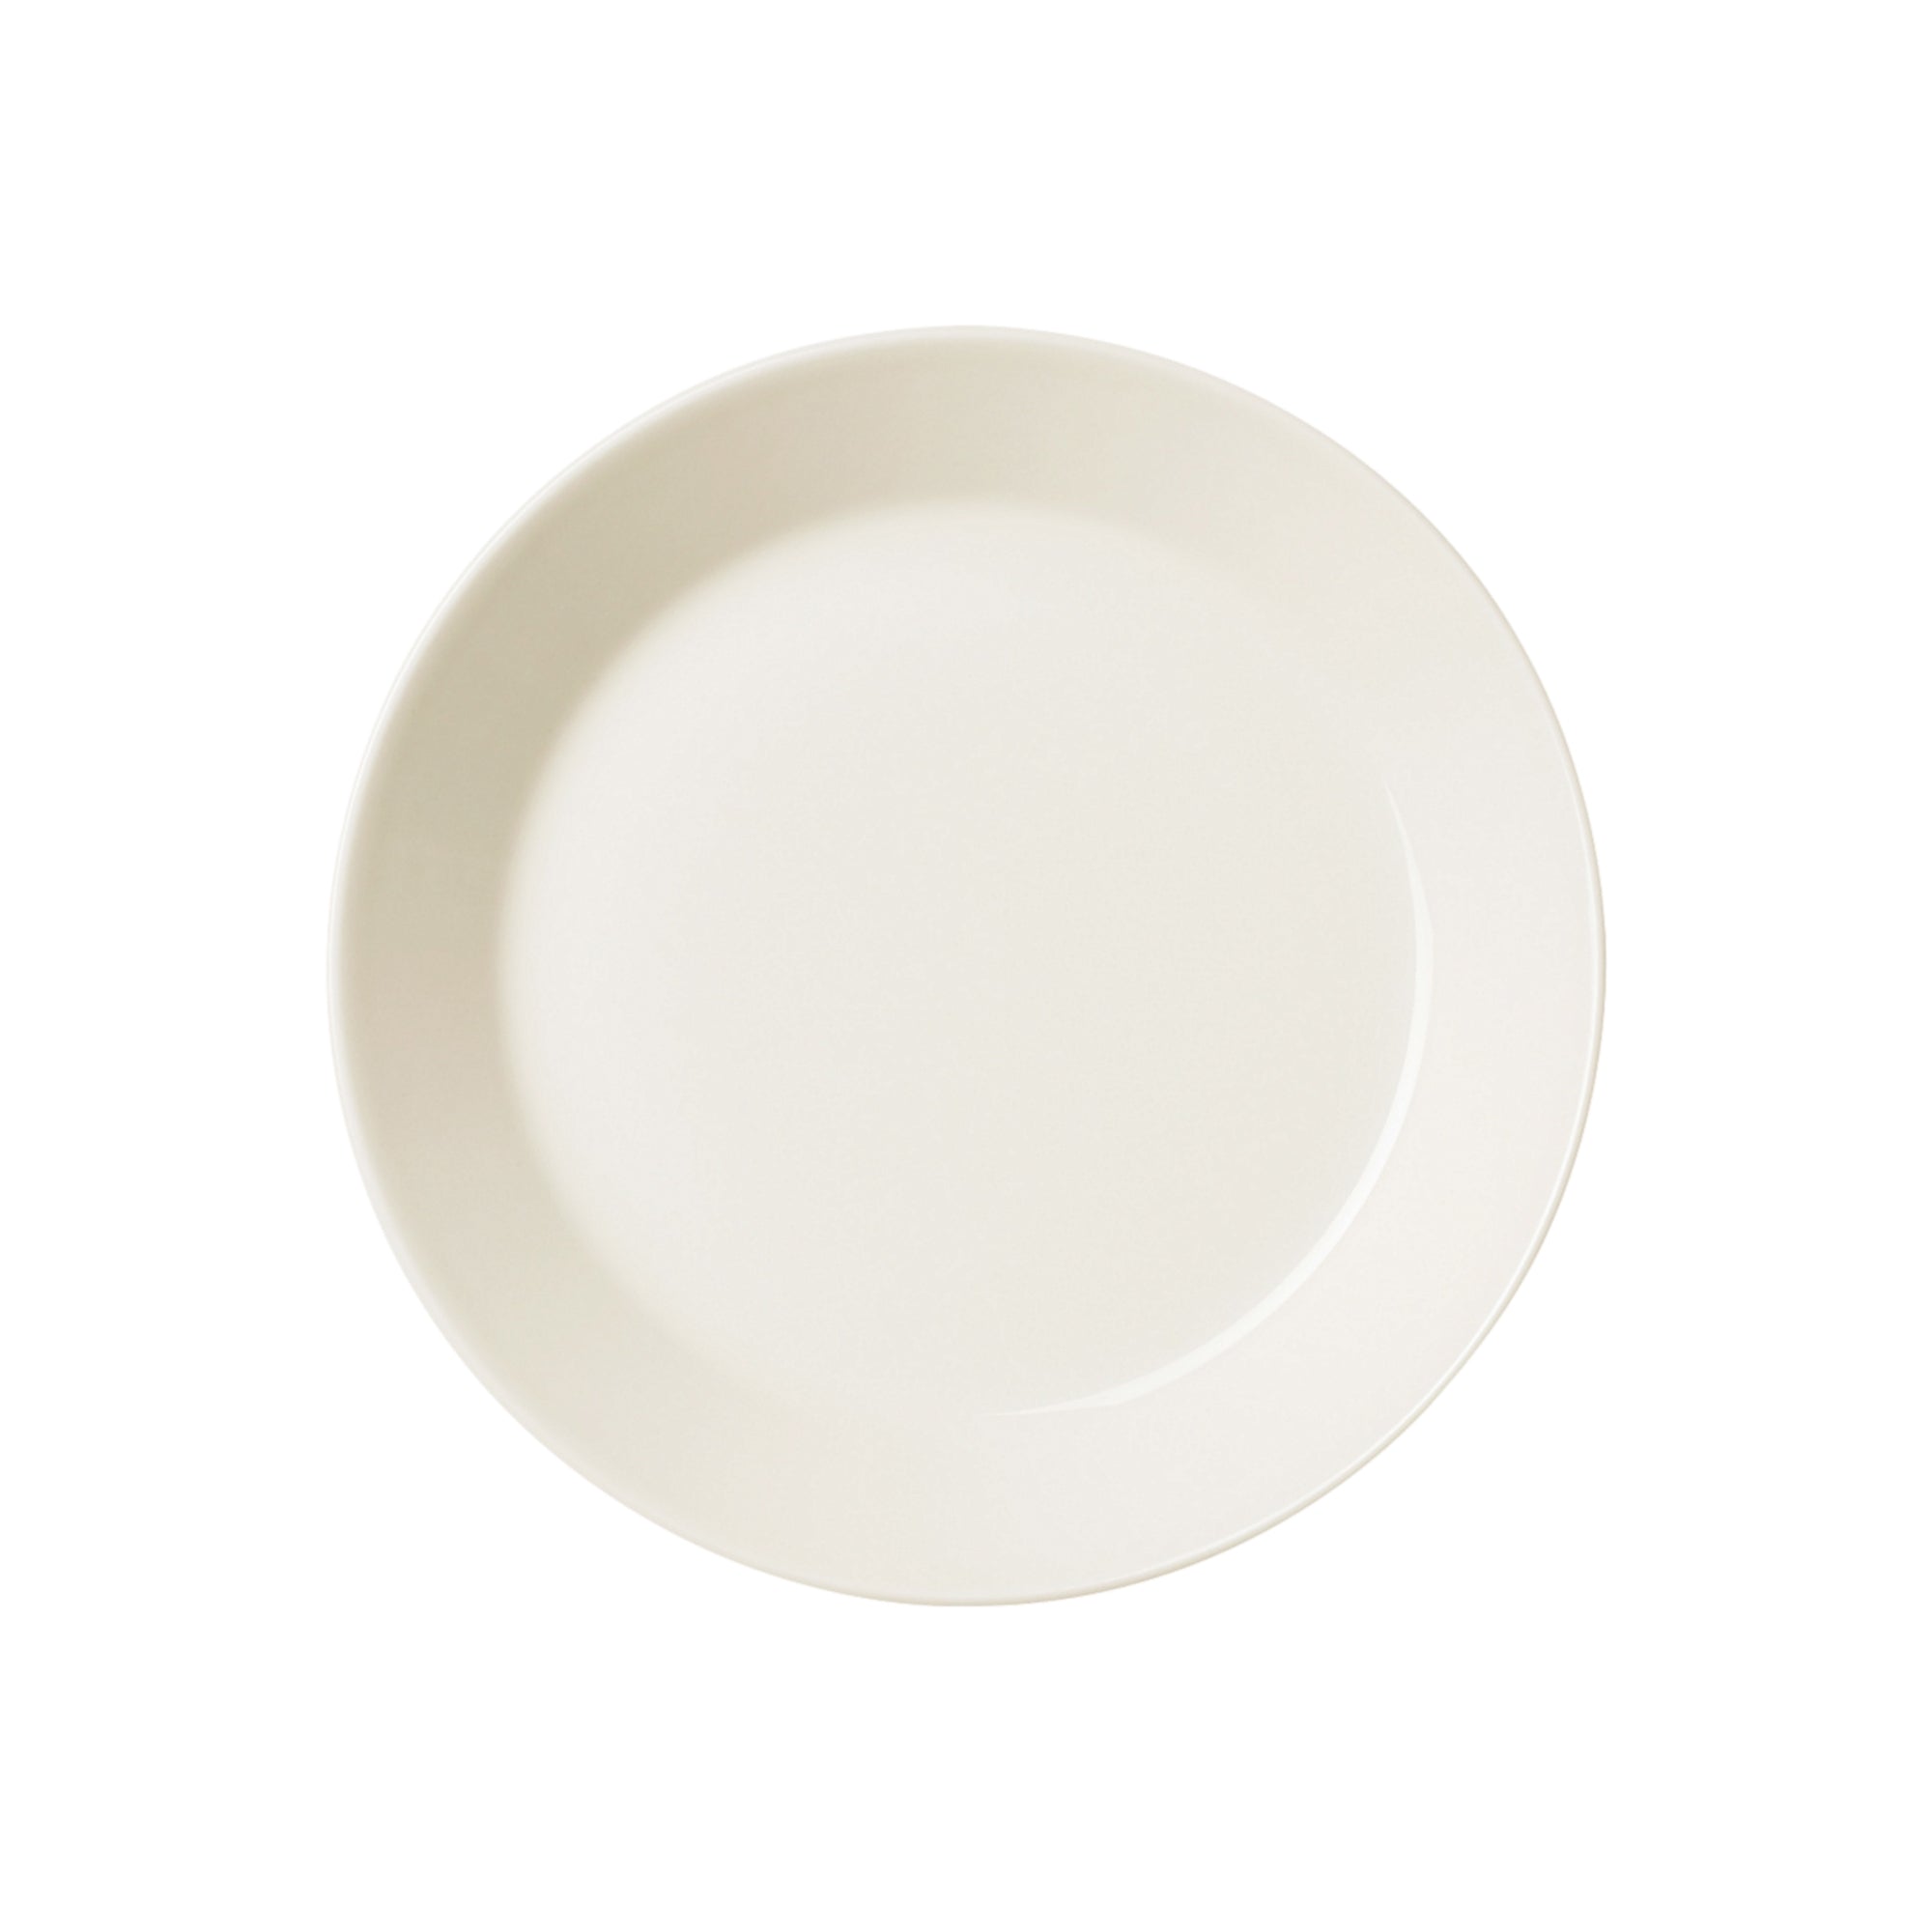 Teema plate 15 cm teacup saucer 0.96